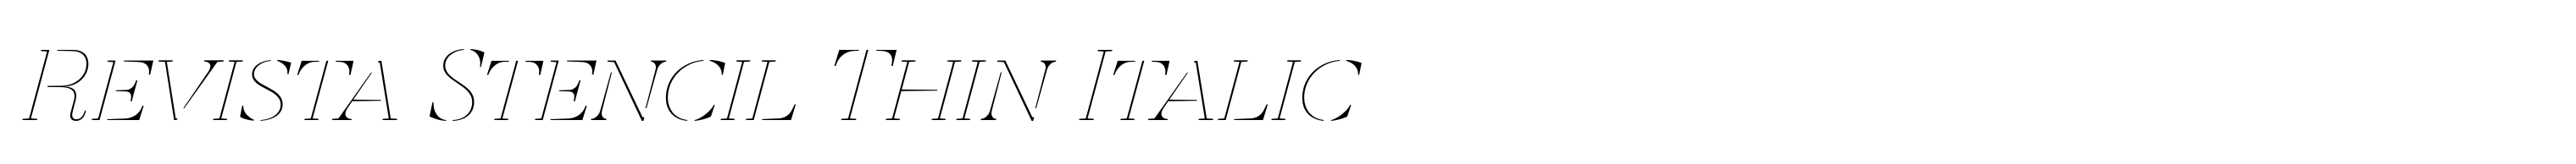 Revista Stencil Thin Italic